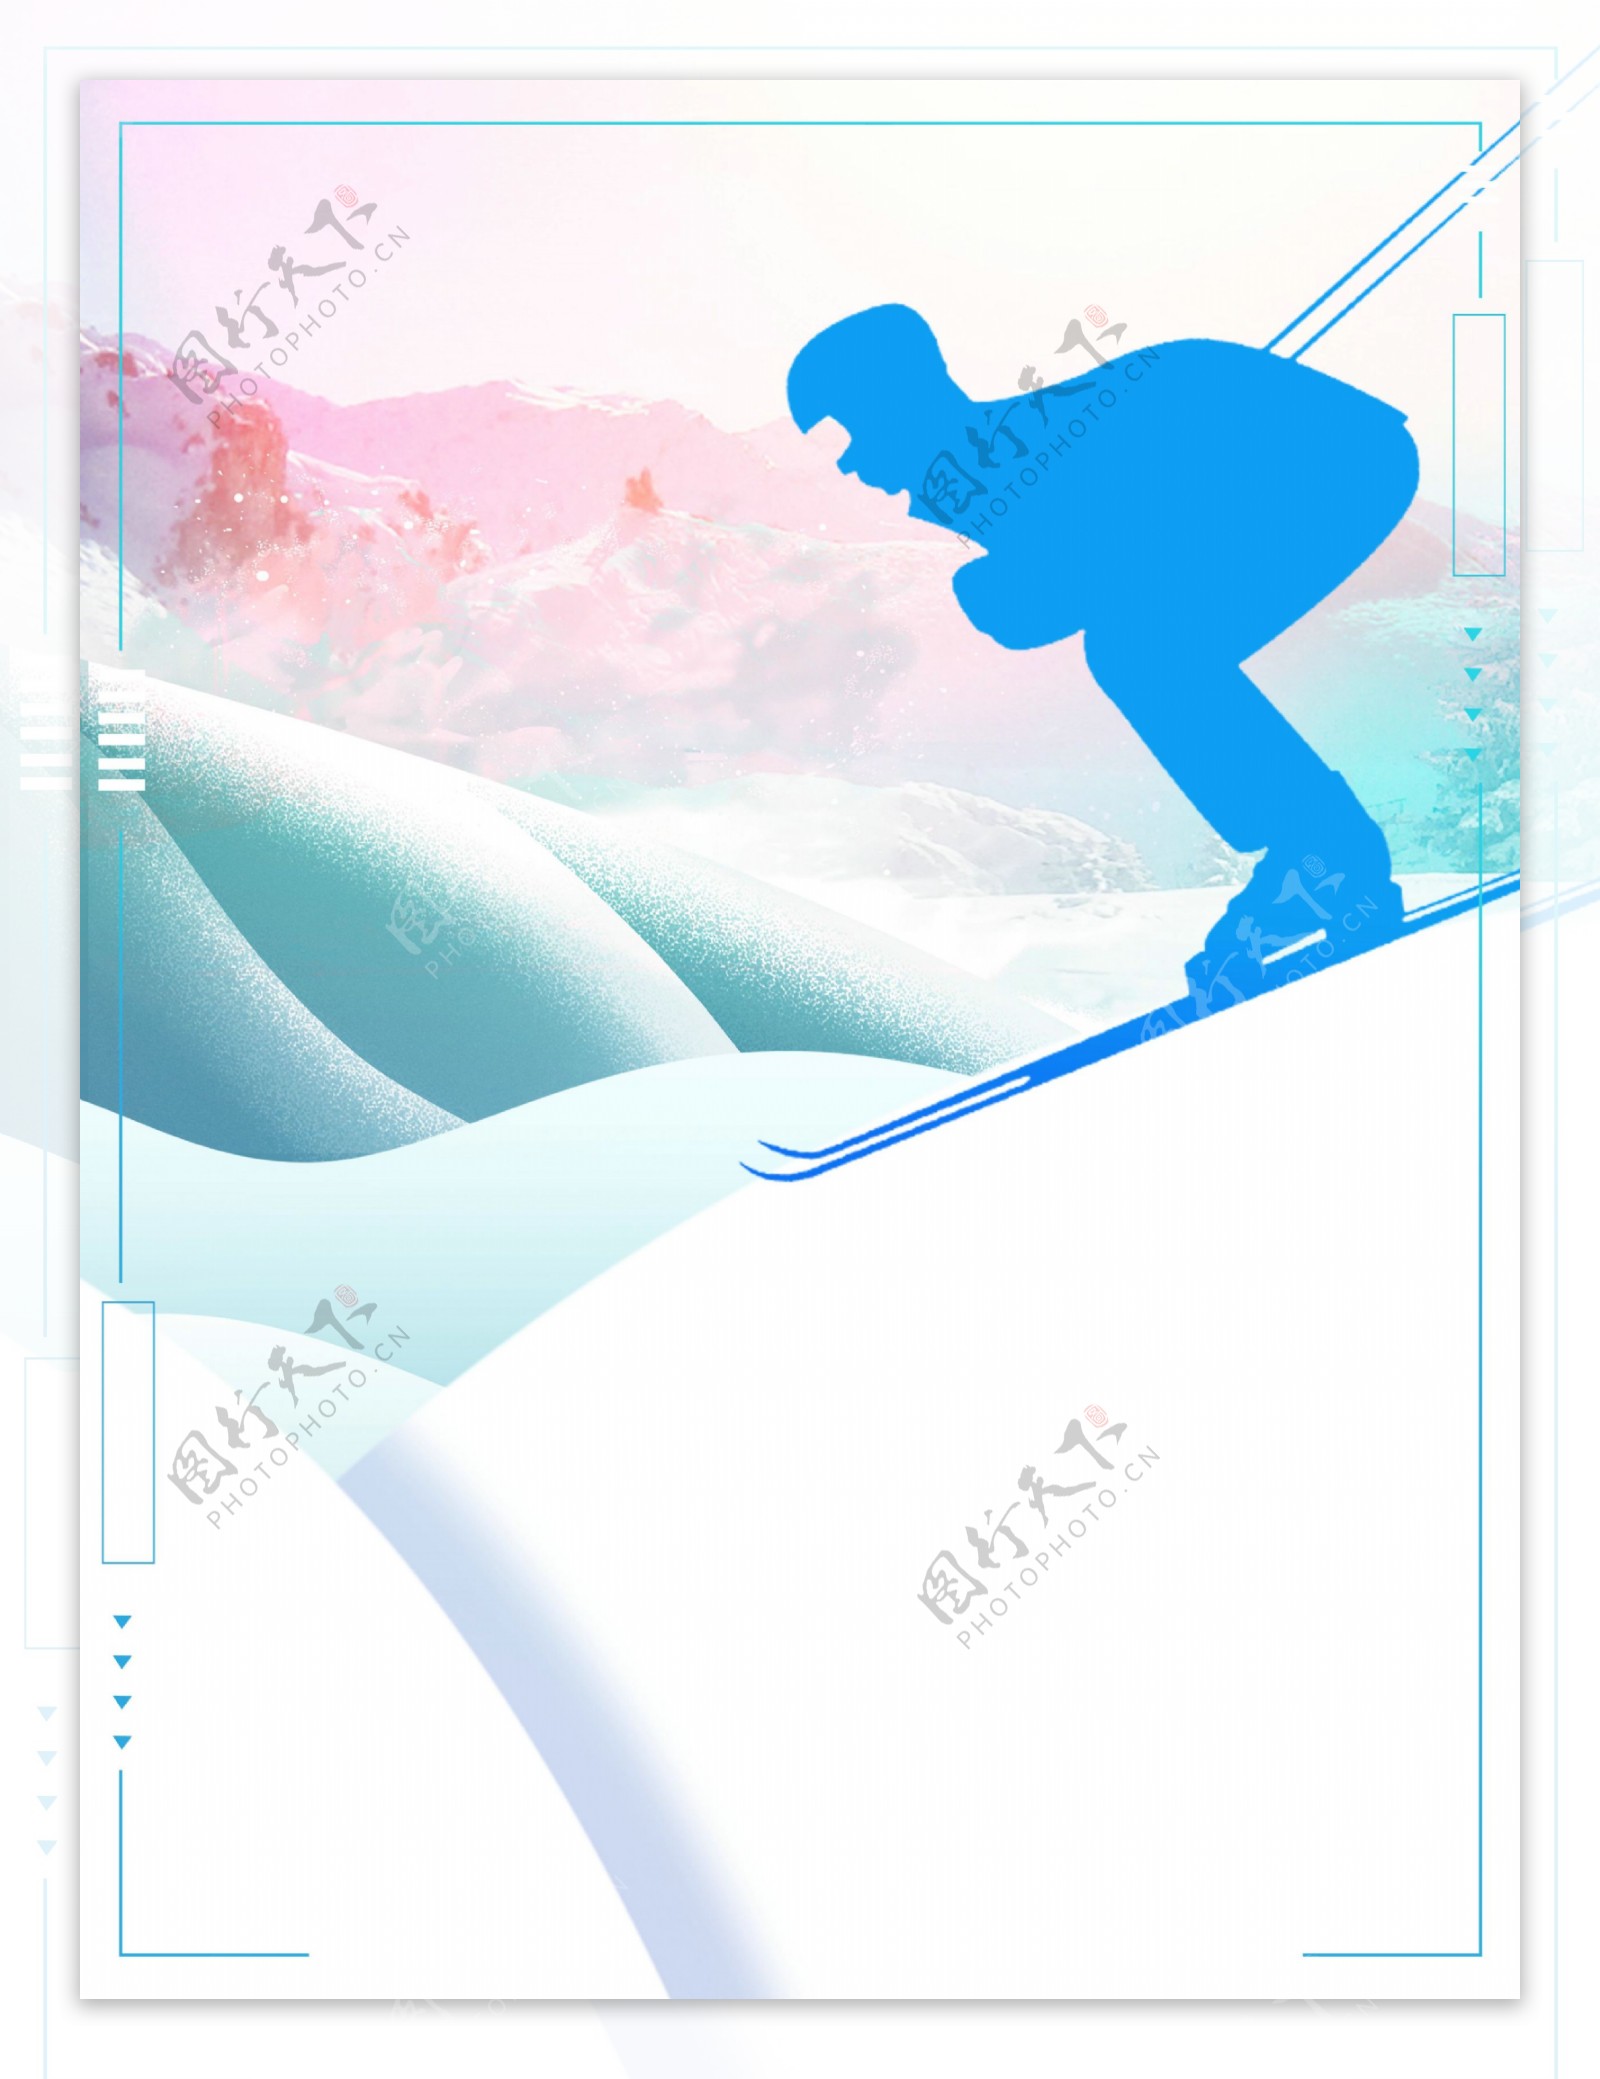 简约时尚冬天滑雪运动海报背景